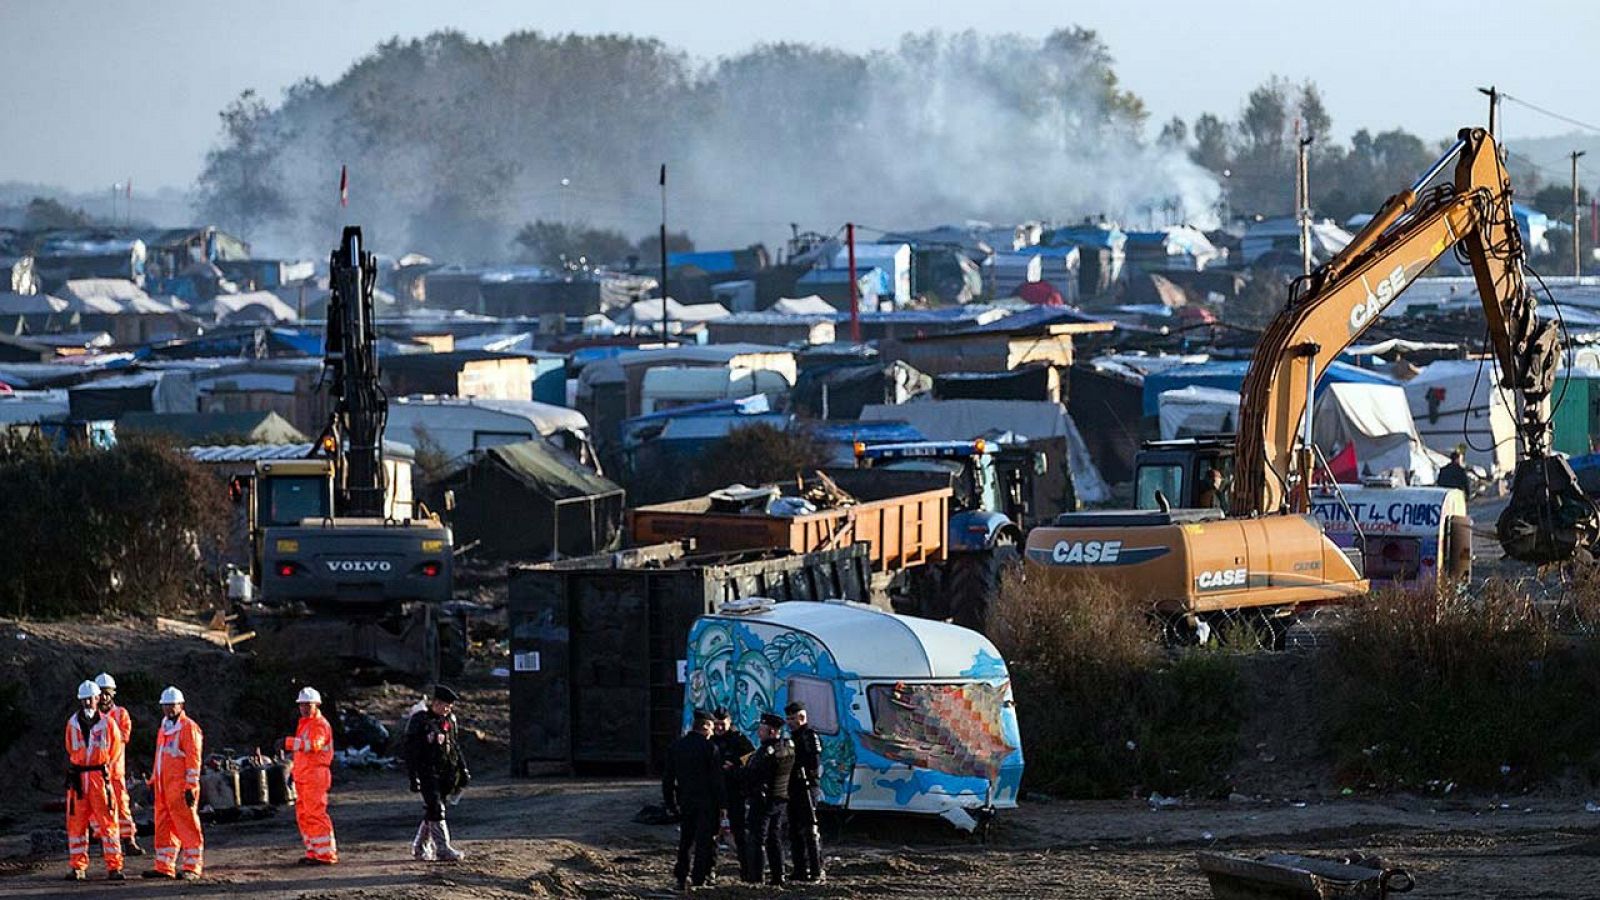 Obreros continúan con el proceso de desmantelamiento del campamento de inmigrantes conocido como la "Jungla" de Calais, en Francia